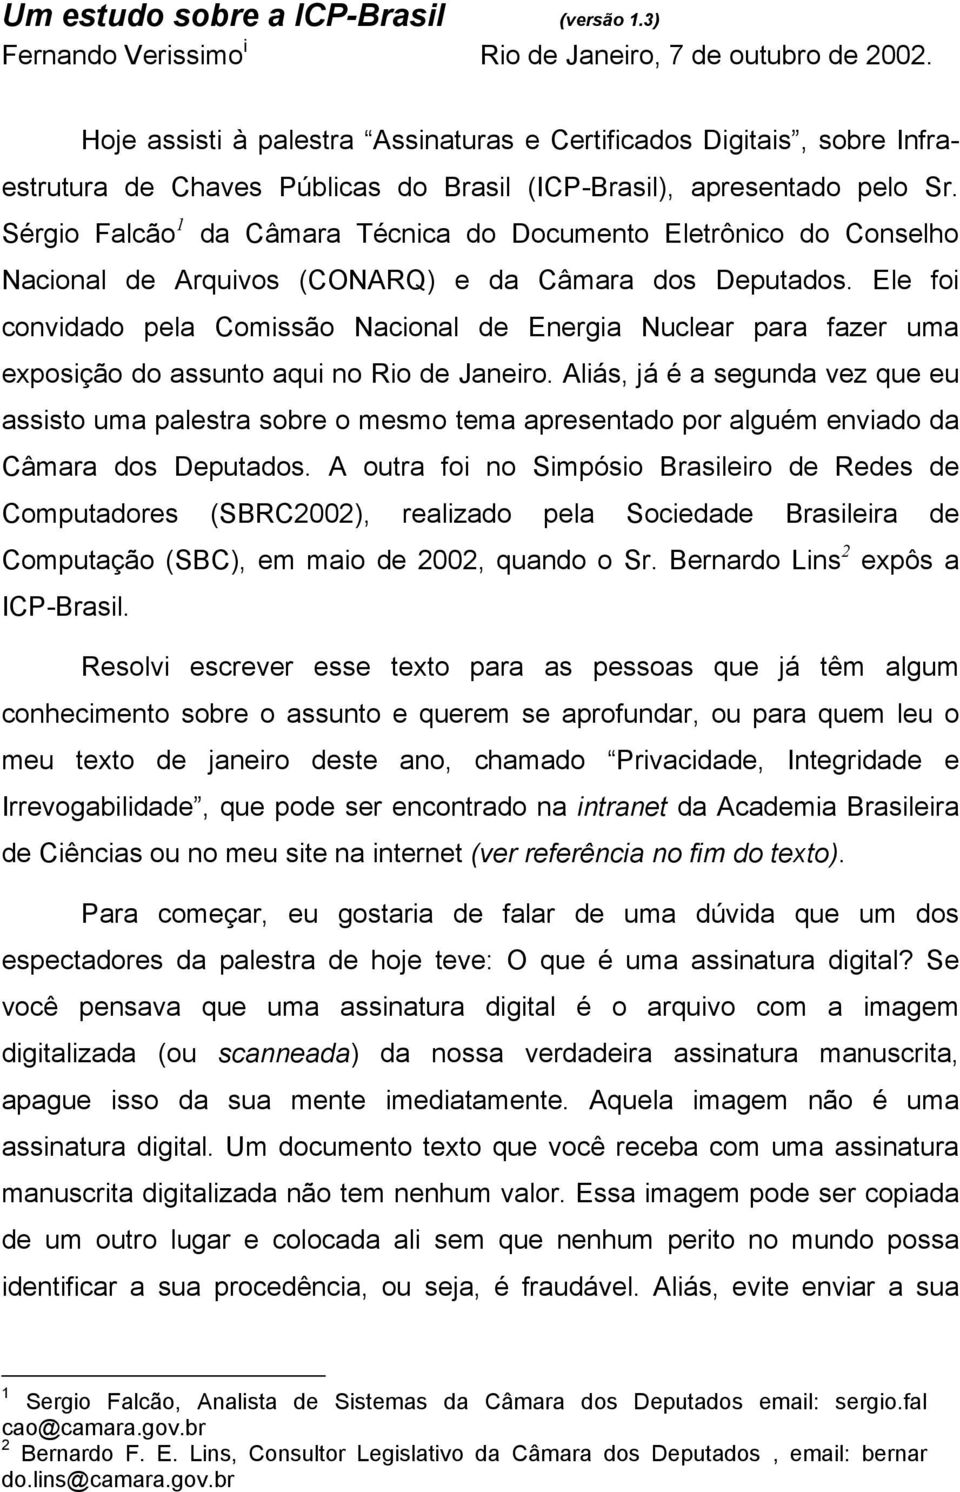 Sérgio Falcão 1 da Câmara Técnica do Documento Eletrônico do Conselho Nacional de Arquivos (CONARQ) e da Câmara dos Deputados.